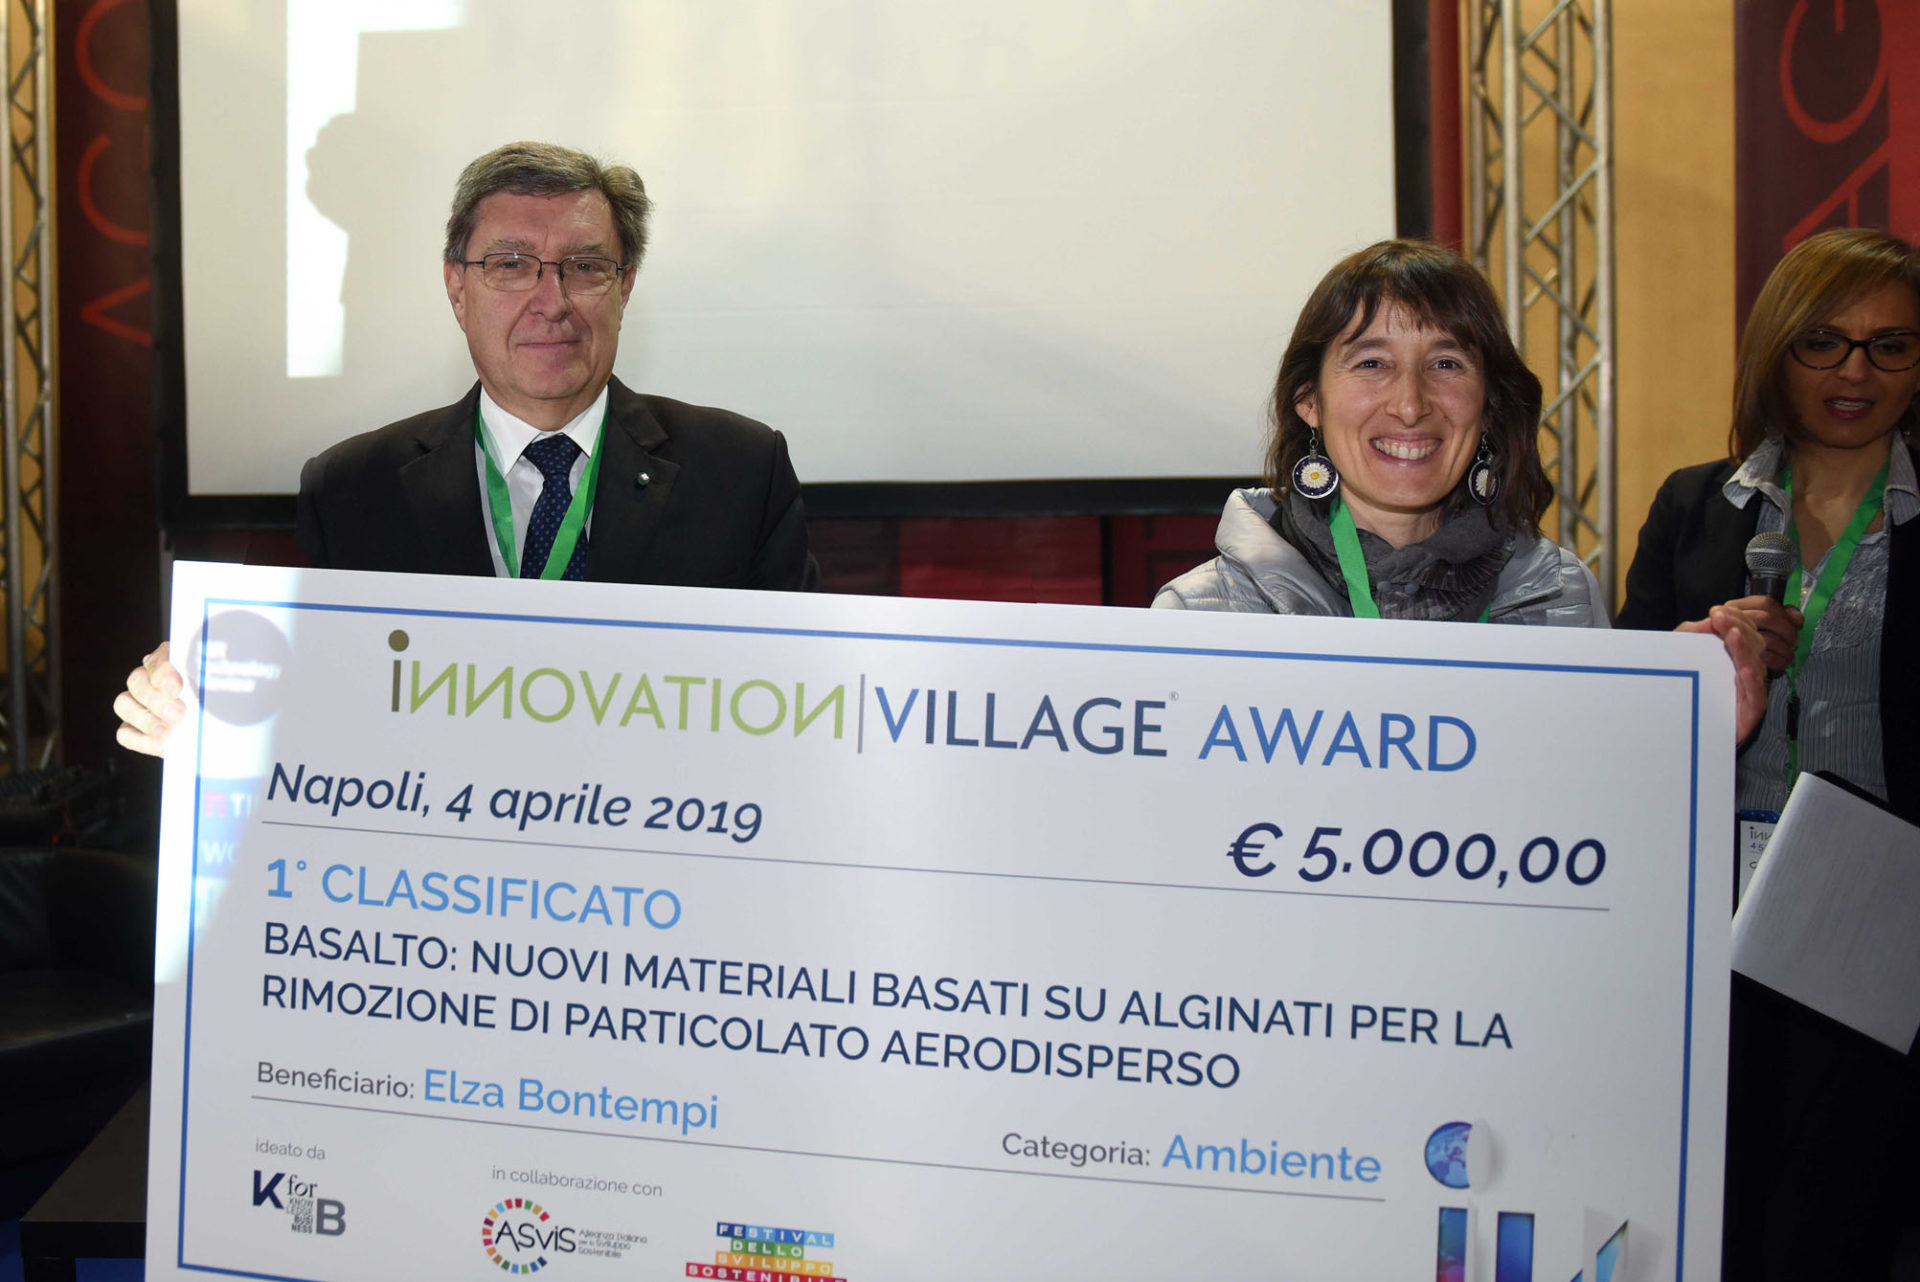 Innovation Village Award: Il progetto Basalto vince la prima edizione